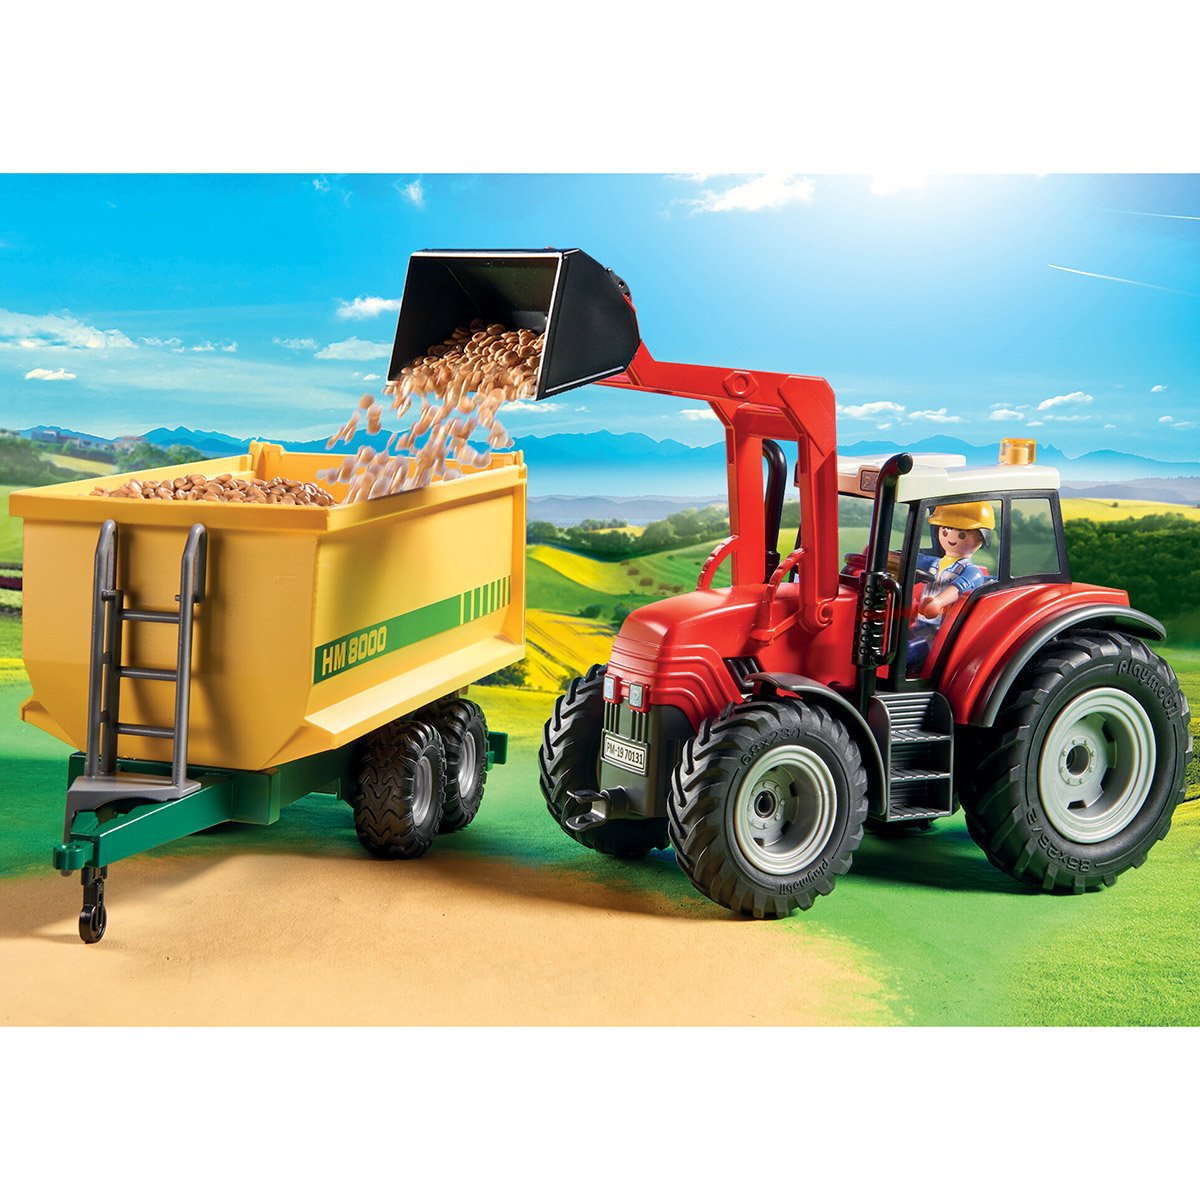 Grand tracteur avec remorque Playmobil Country 70131 - La Grande Récré